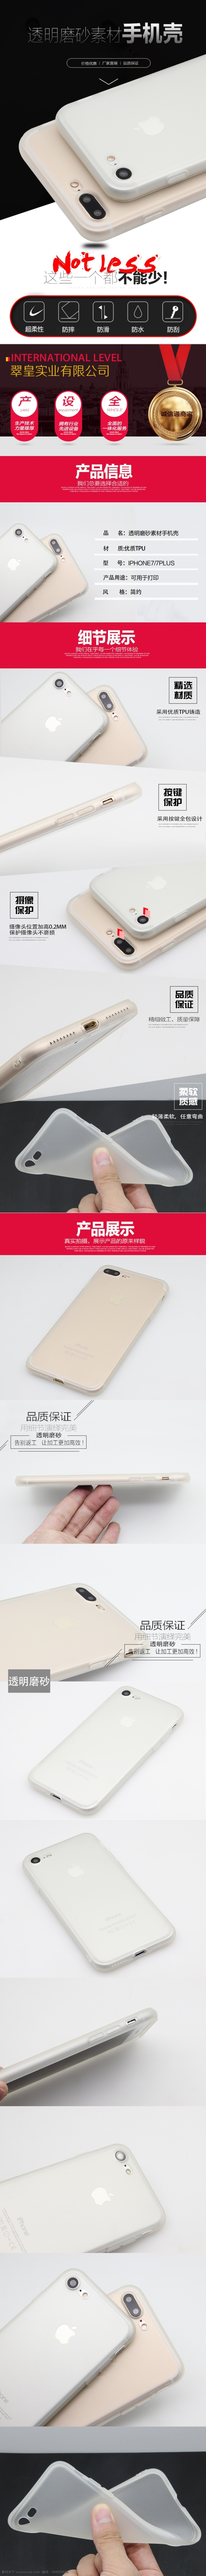 iphone7 透明 磨砂 详情 手机壳详情 手机壳 详情页